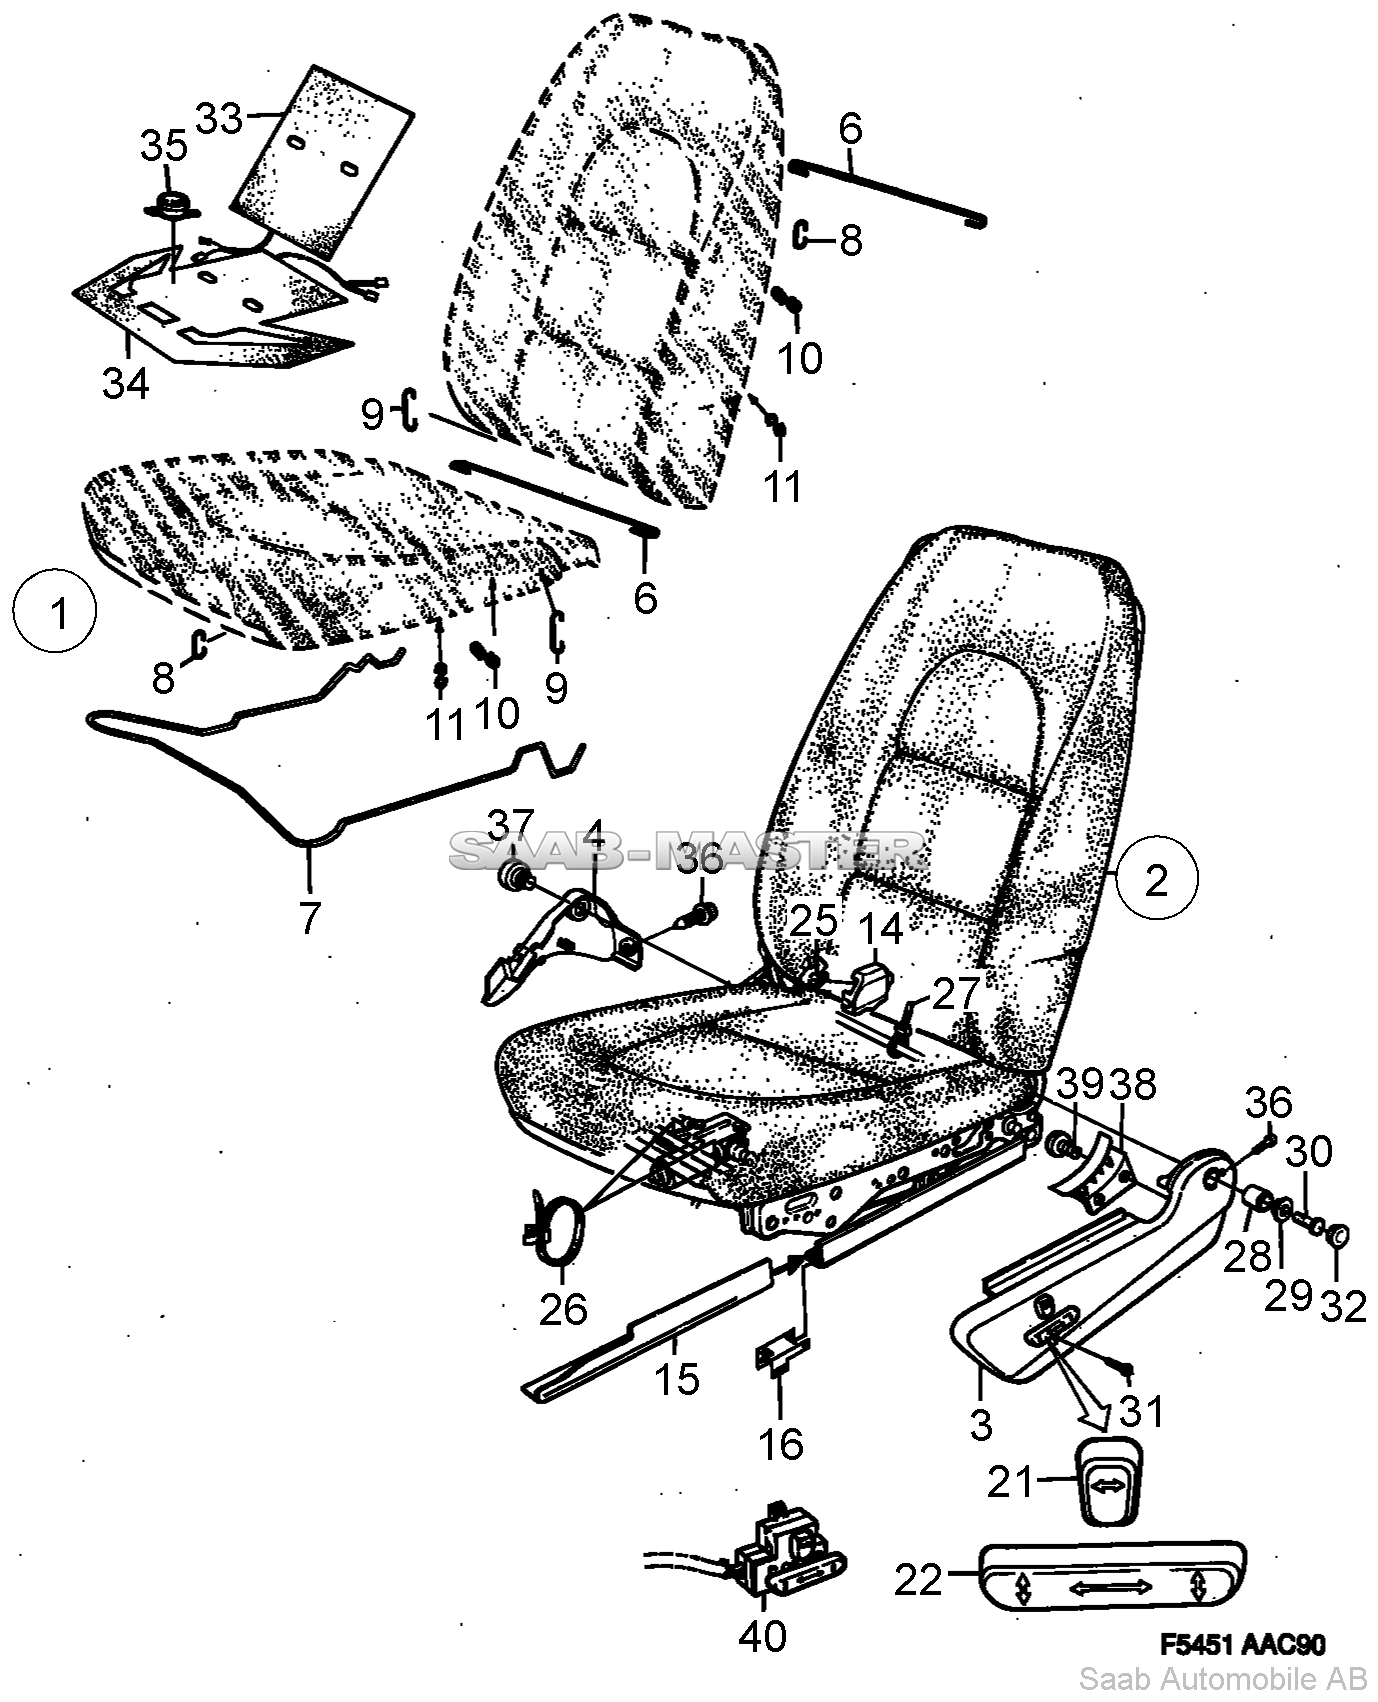 Кресла Часть 1 - Электроманеврируемые   Касается также Кабриолет 1994